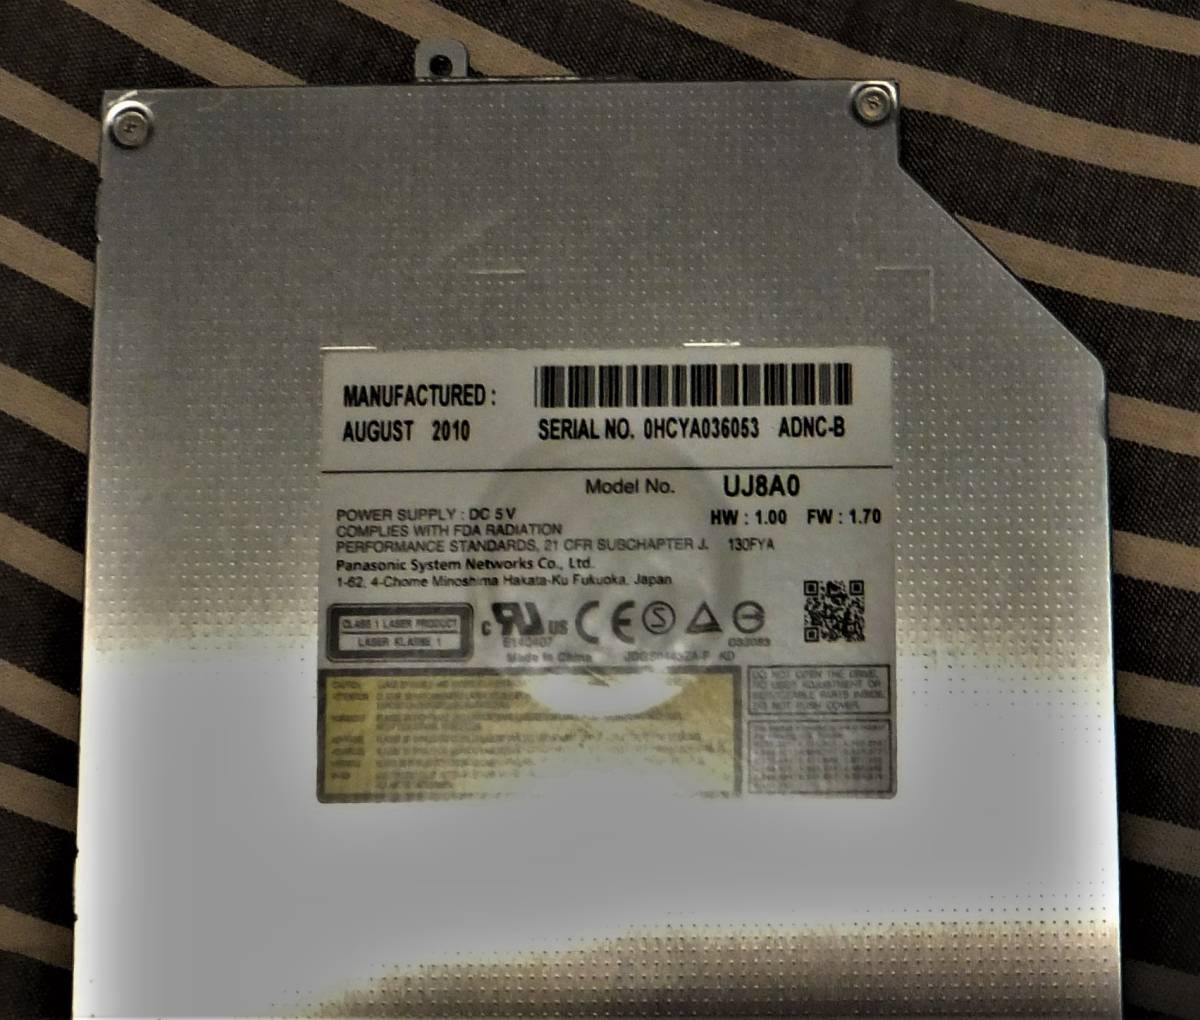 ノートPC用12.7mm SATA ベゼル無 内蔵DVDRWドライブ_概要の写真です・型番違いも機能は同一です